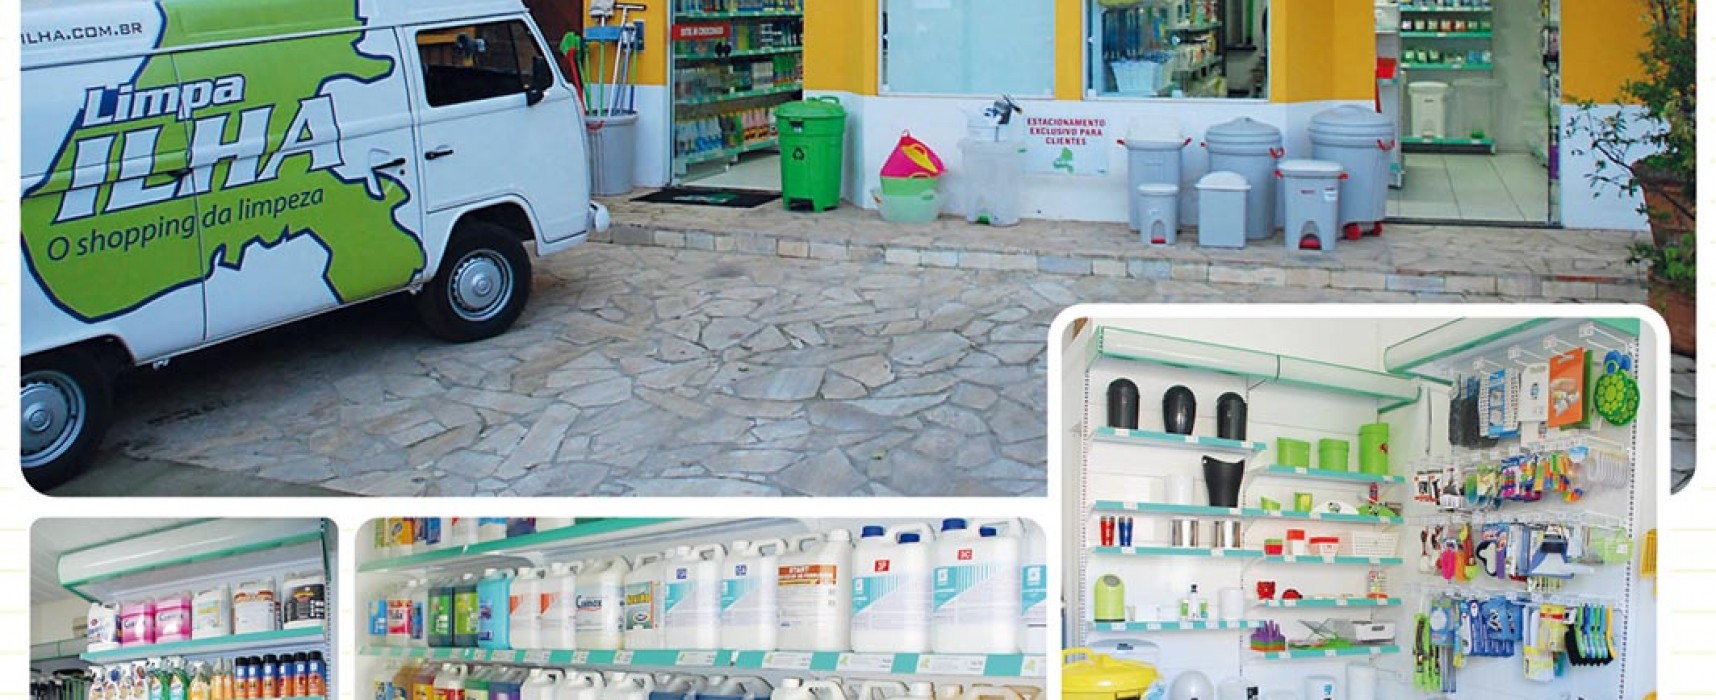 Limpa Ilha tem linha completa de produtos e acessório profissionais para limpeza